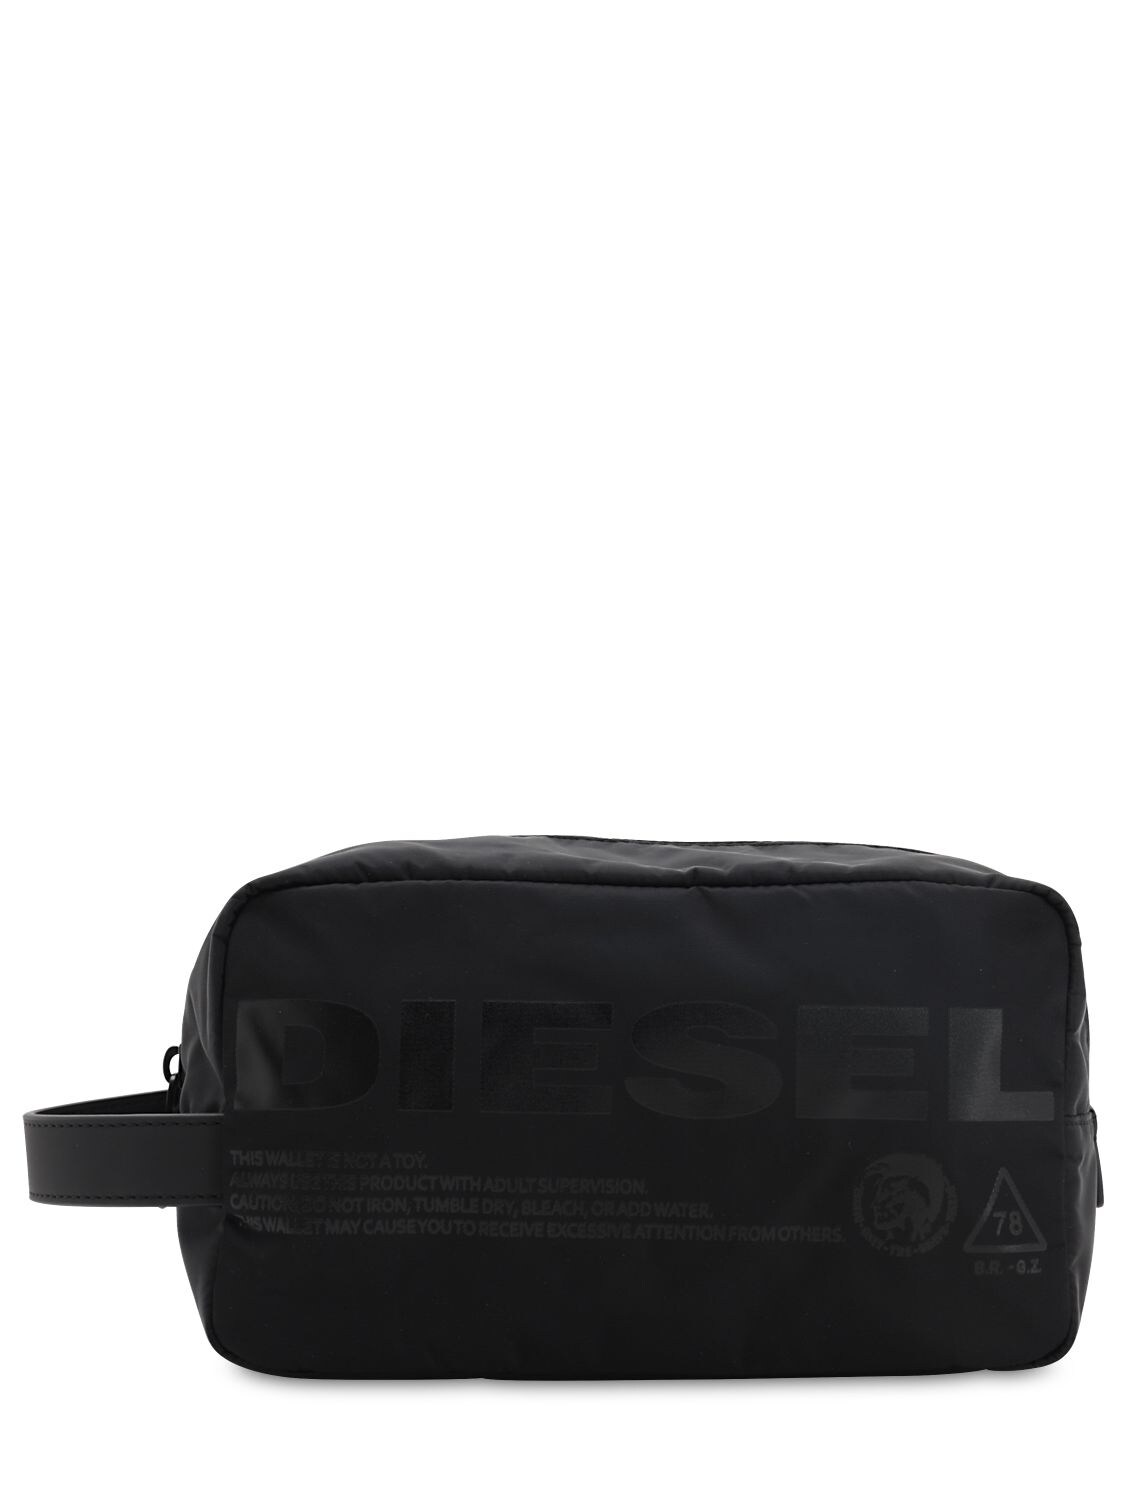 Diesel Tech Toiletry Bag In Black